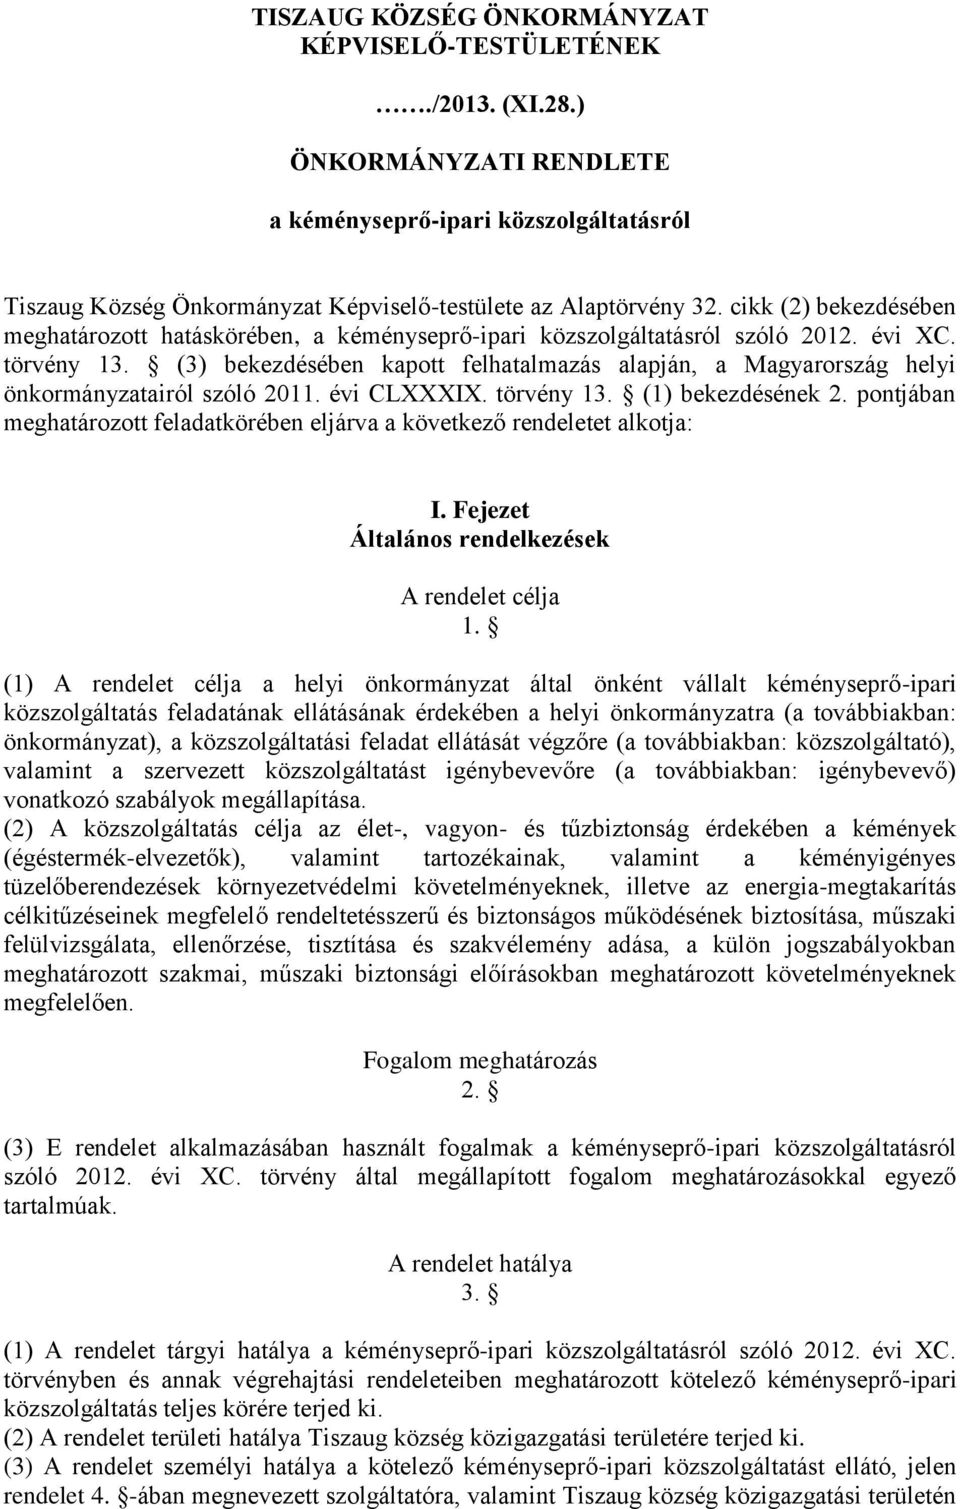 (3) bekezdésében kapott felhatalmazás alapján, a Magyarország helyi önkormányzatairól szóló 2011. évi CLXXXIX. törvény 13. (1) bekezdésének 2.